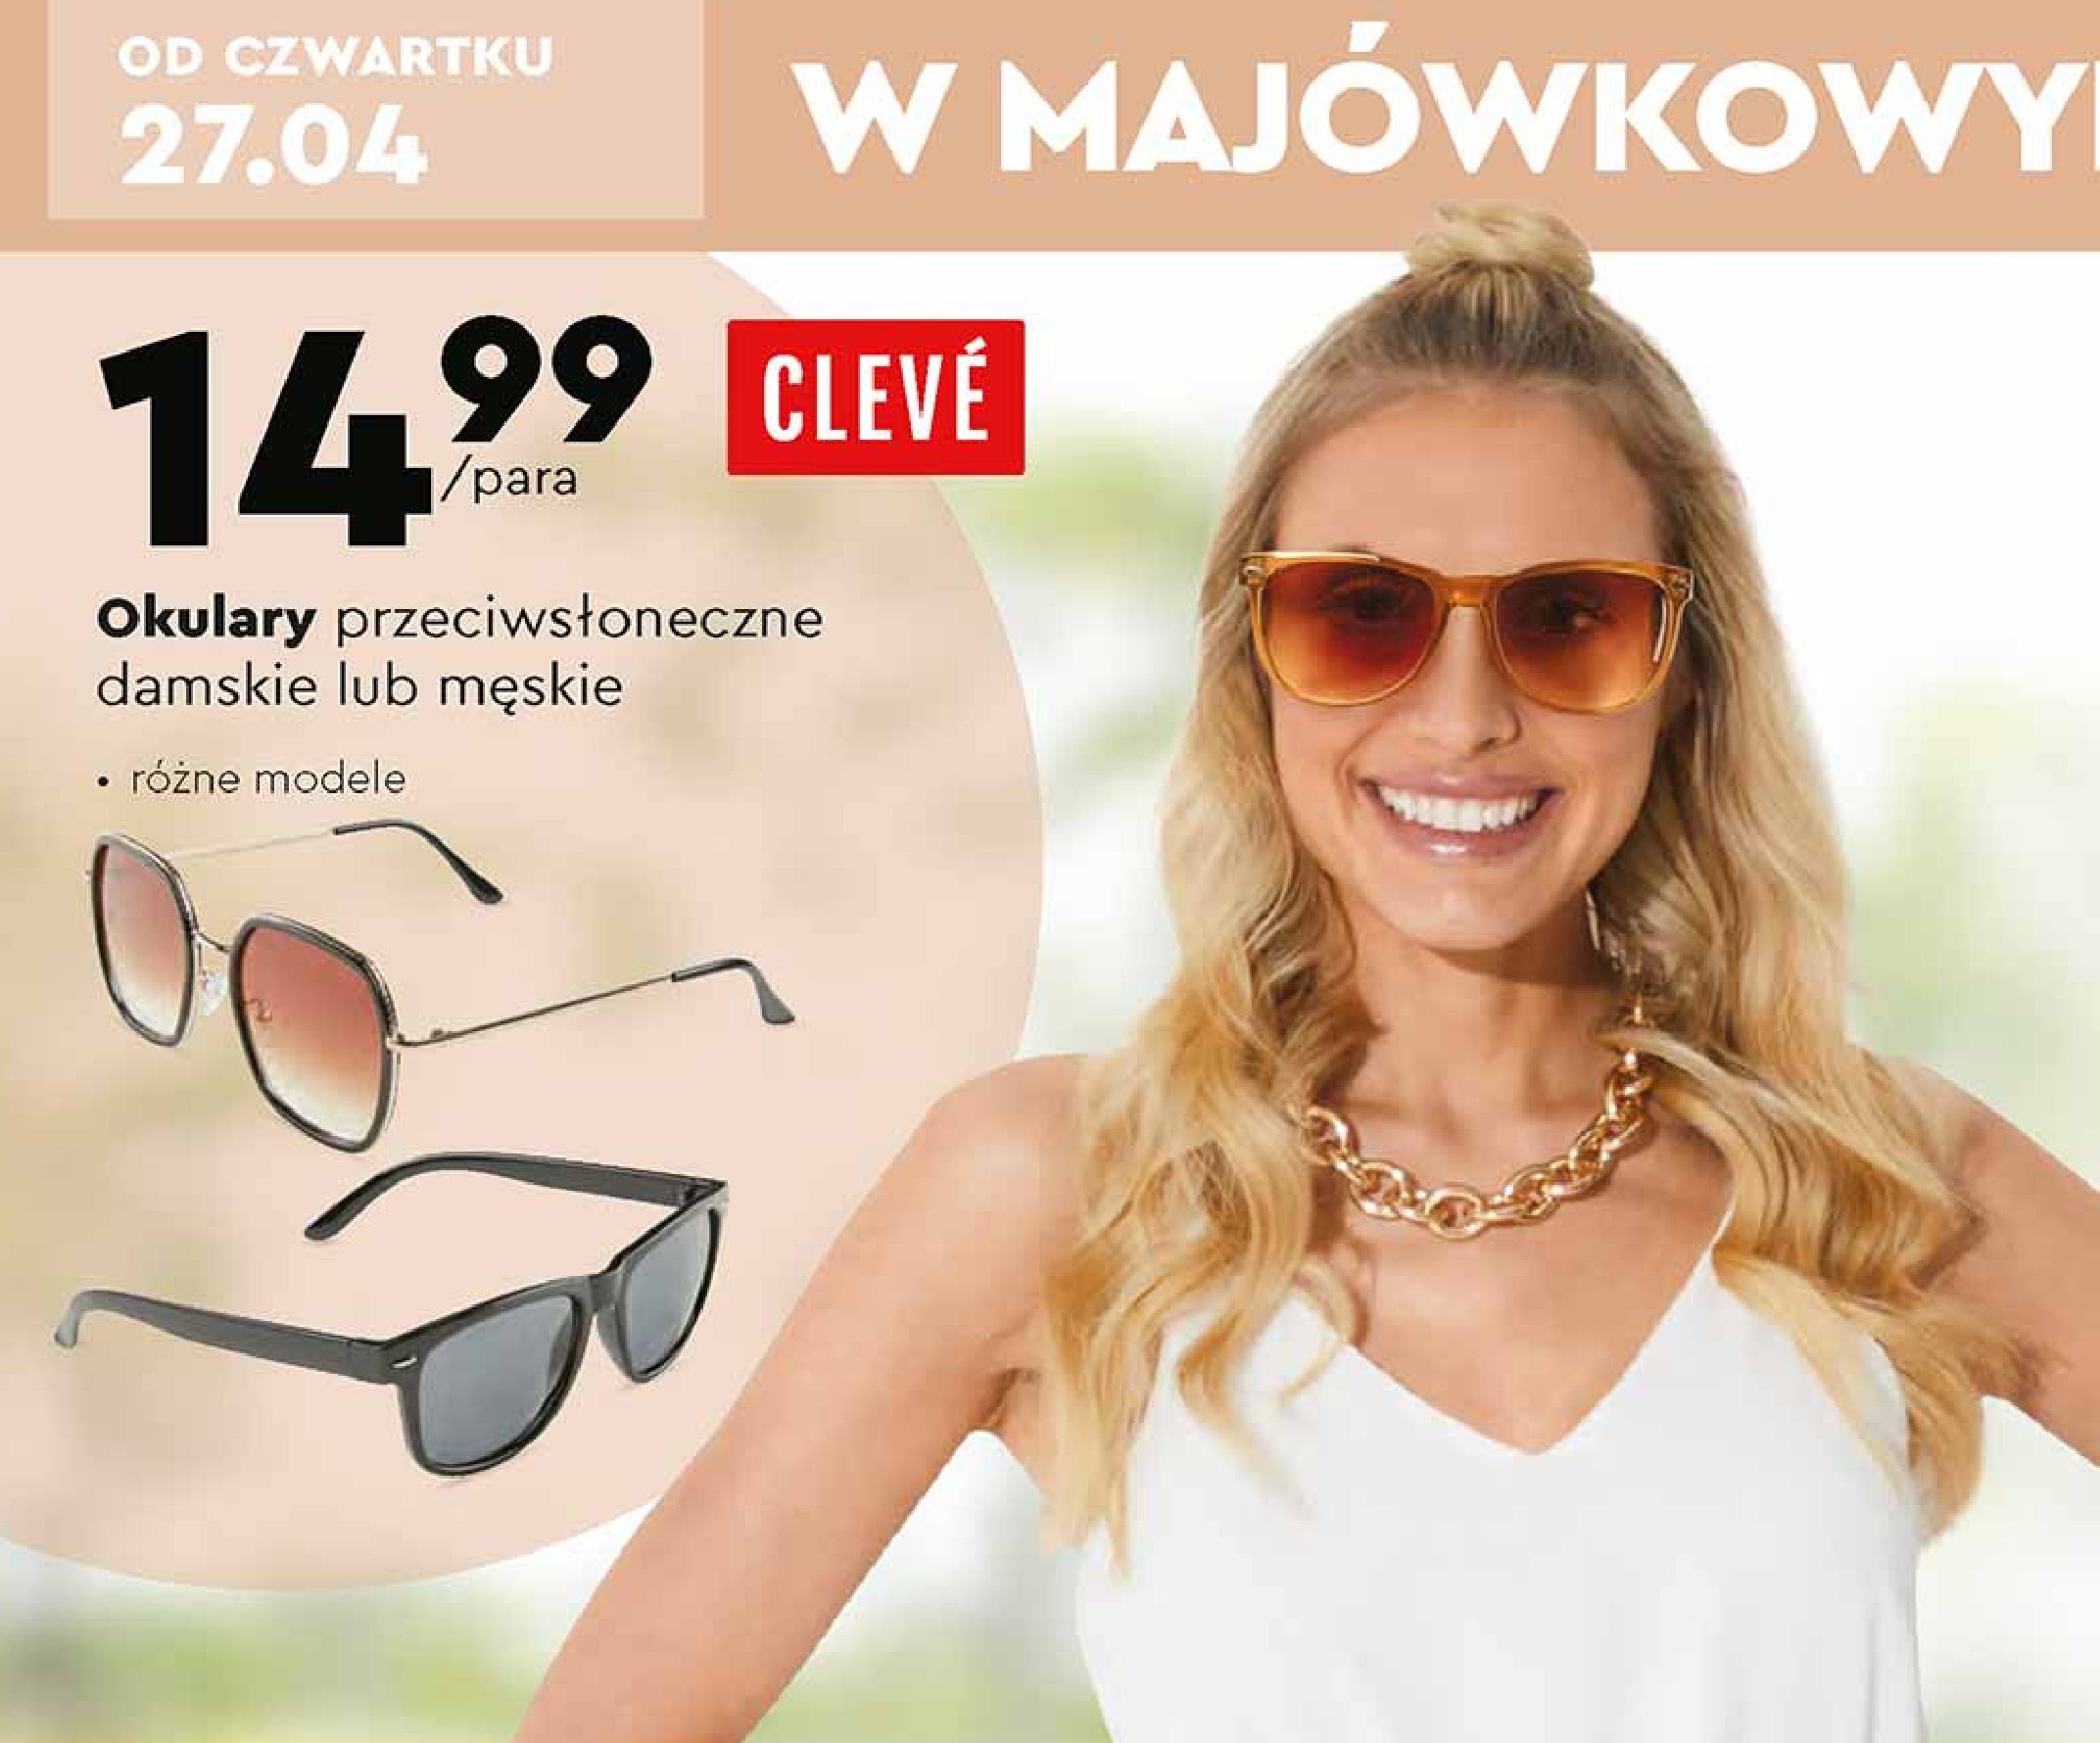 Okulary przeciwsłoneczne męskie Cleve promocja